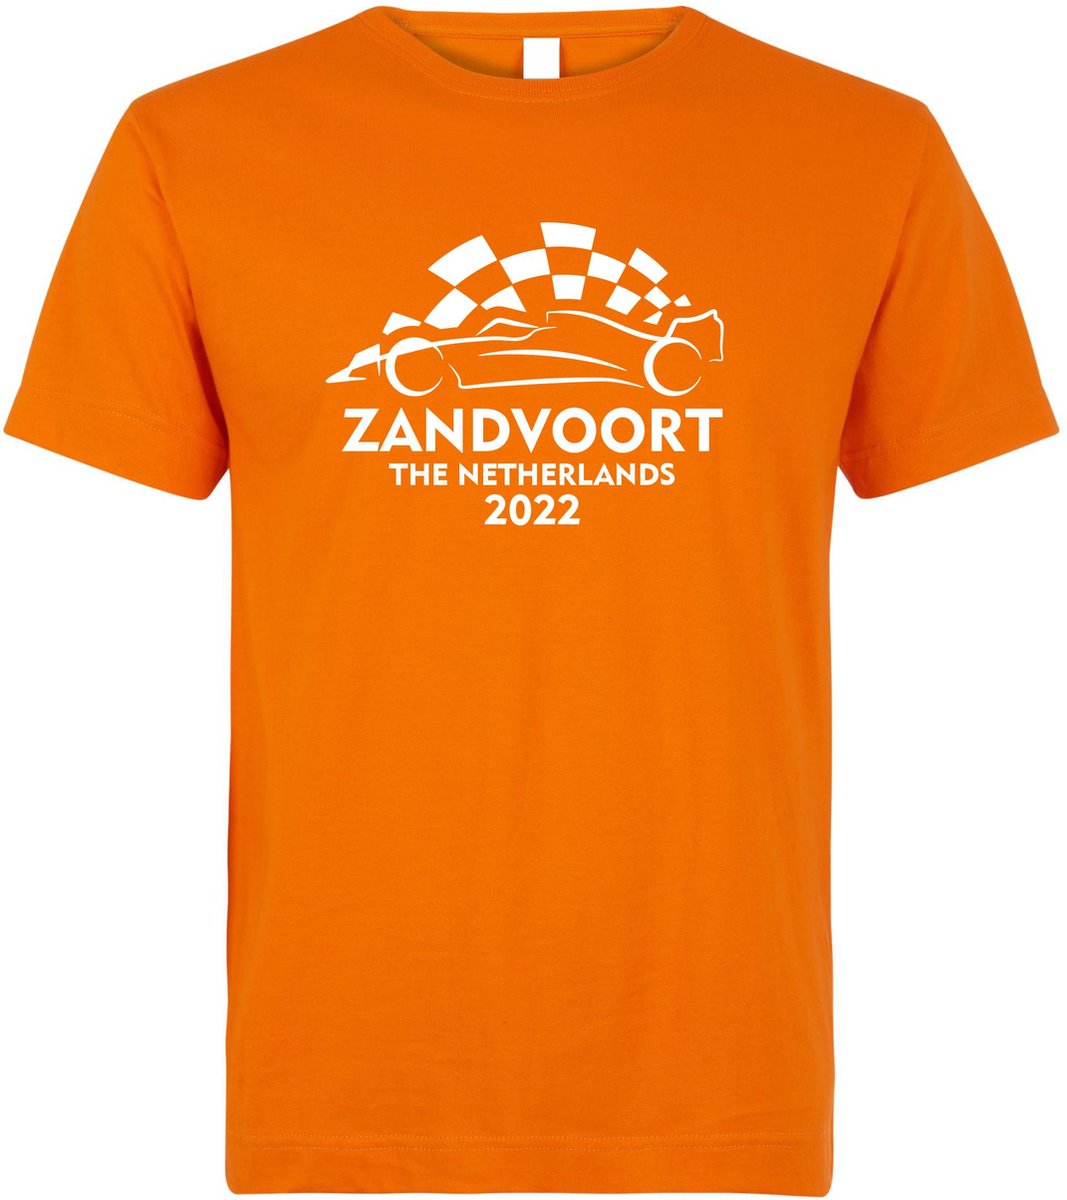 T-shirt Zandvoort The Netherlands 2022 met raceauto | Max Verstappen / Red Bull Racing / Formule 1 fan | Grand Prix Circuit Zandvoort | kleding shirt | Oranje | maat S